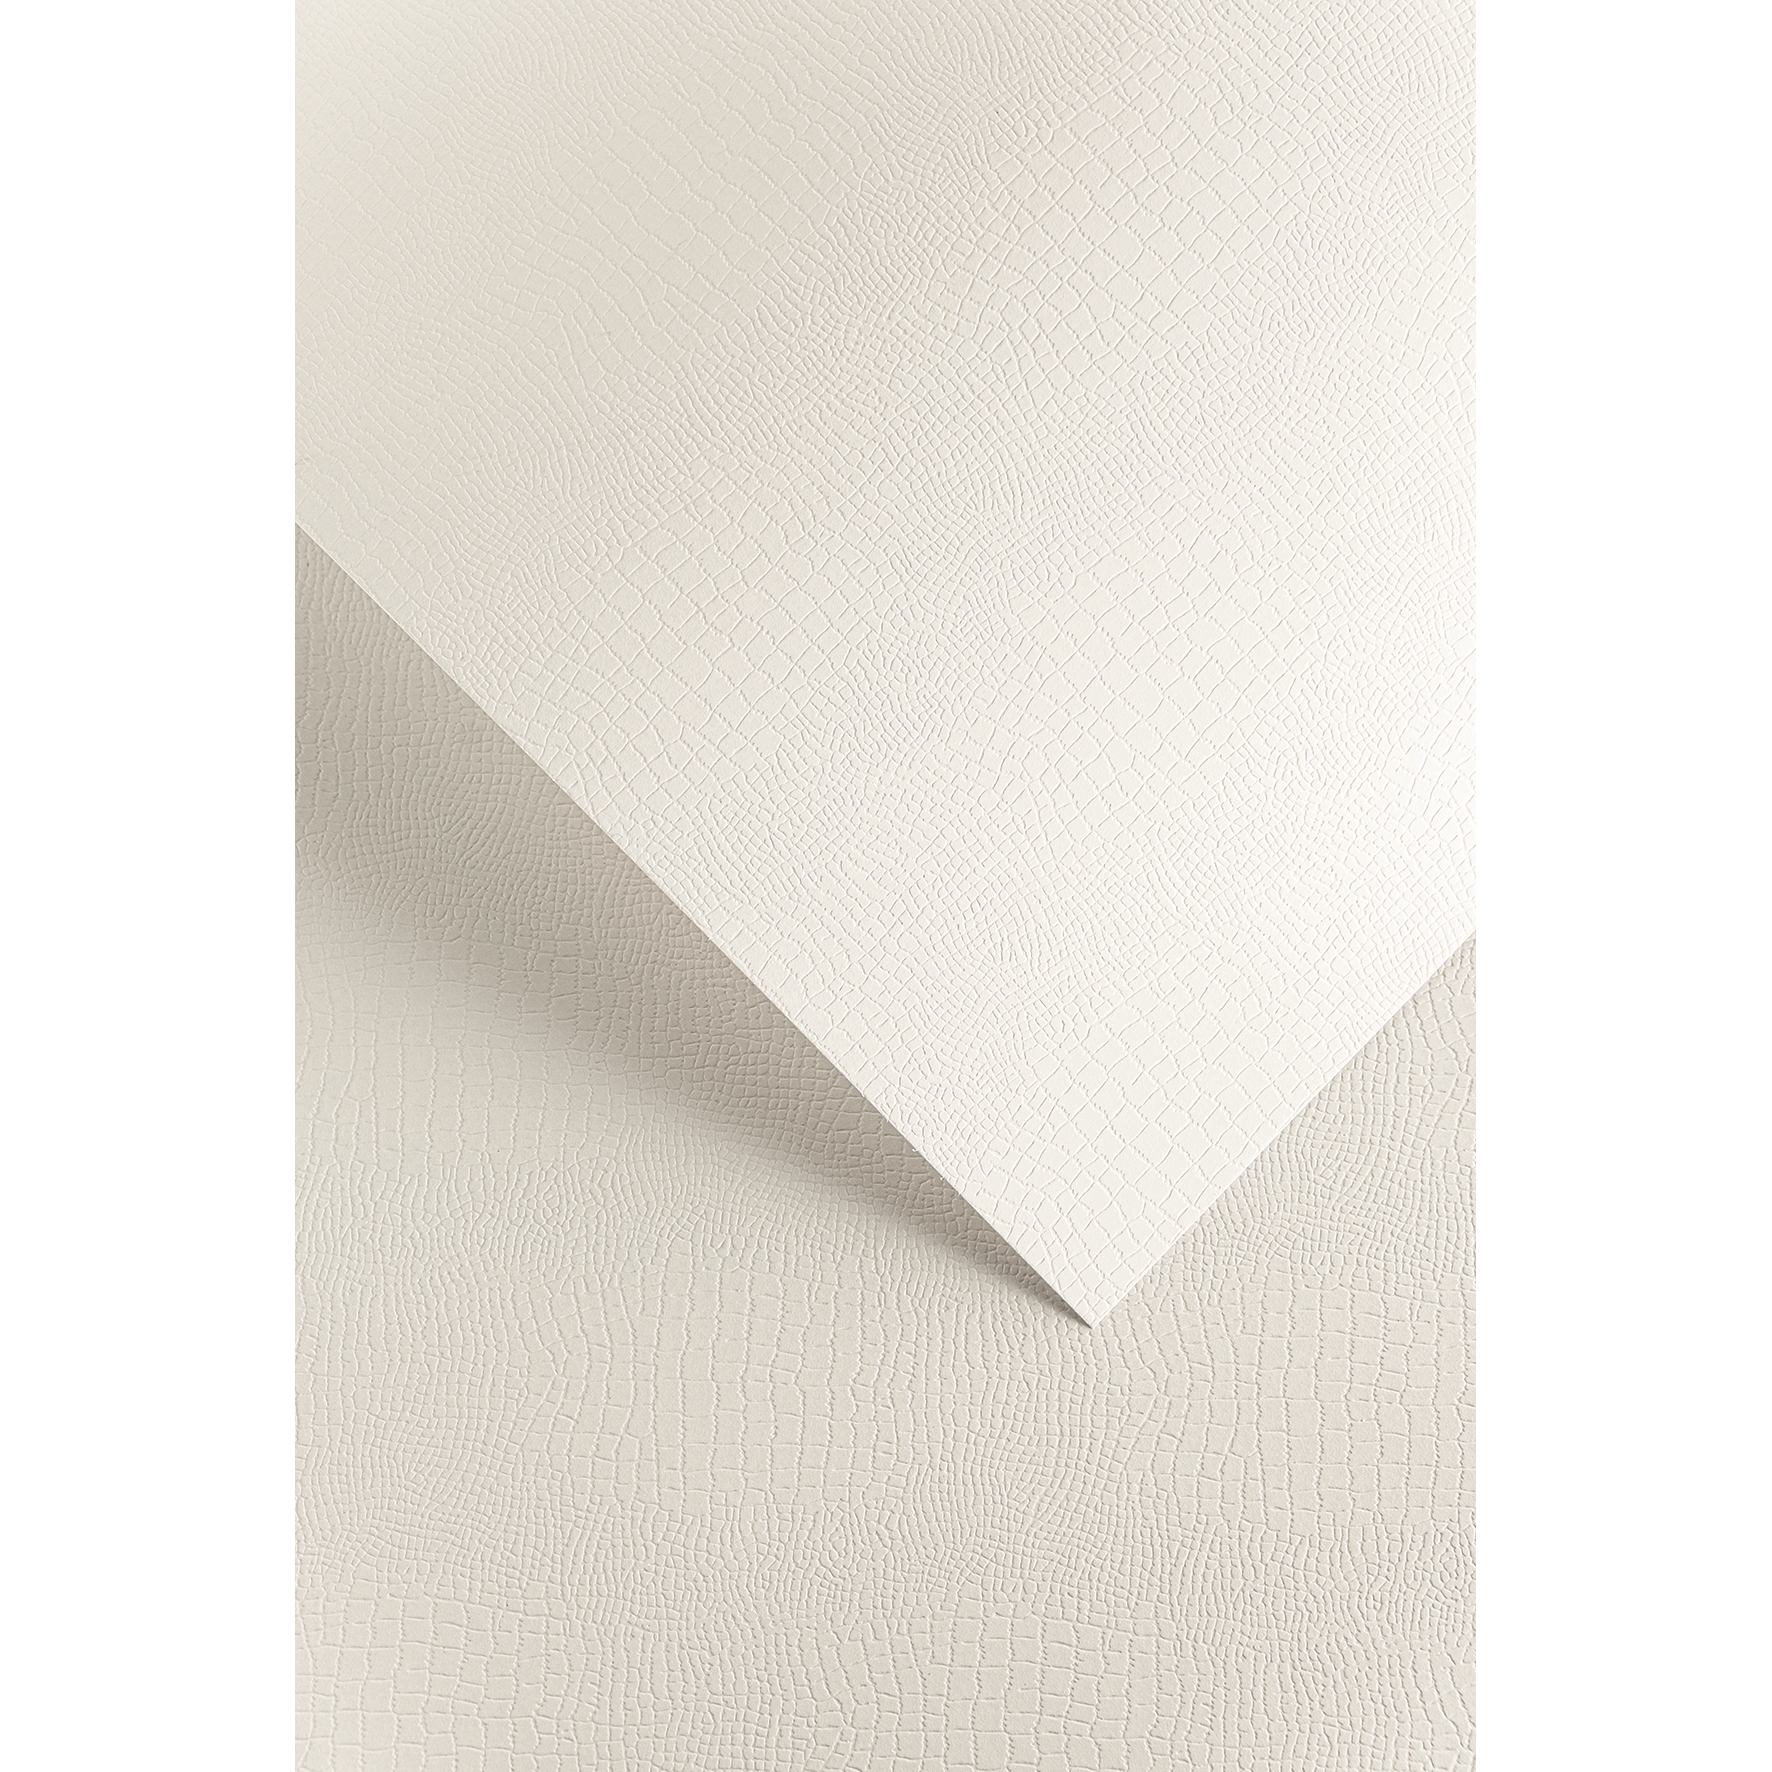 Ozdobný papír Borneo, bílý, 220g, 20ks